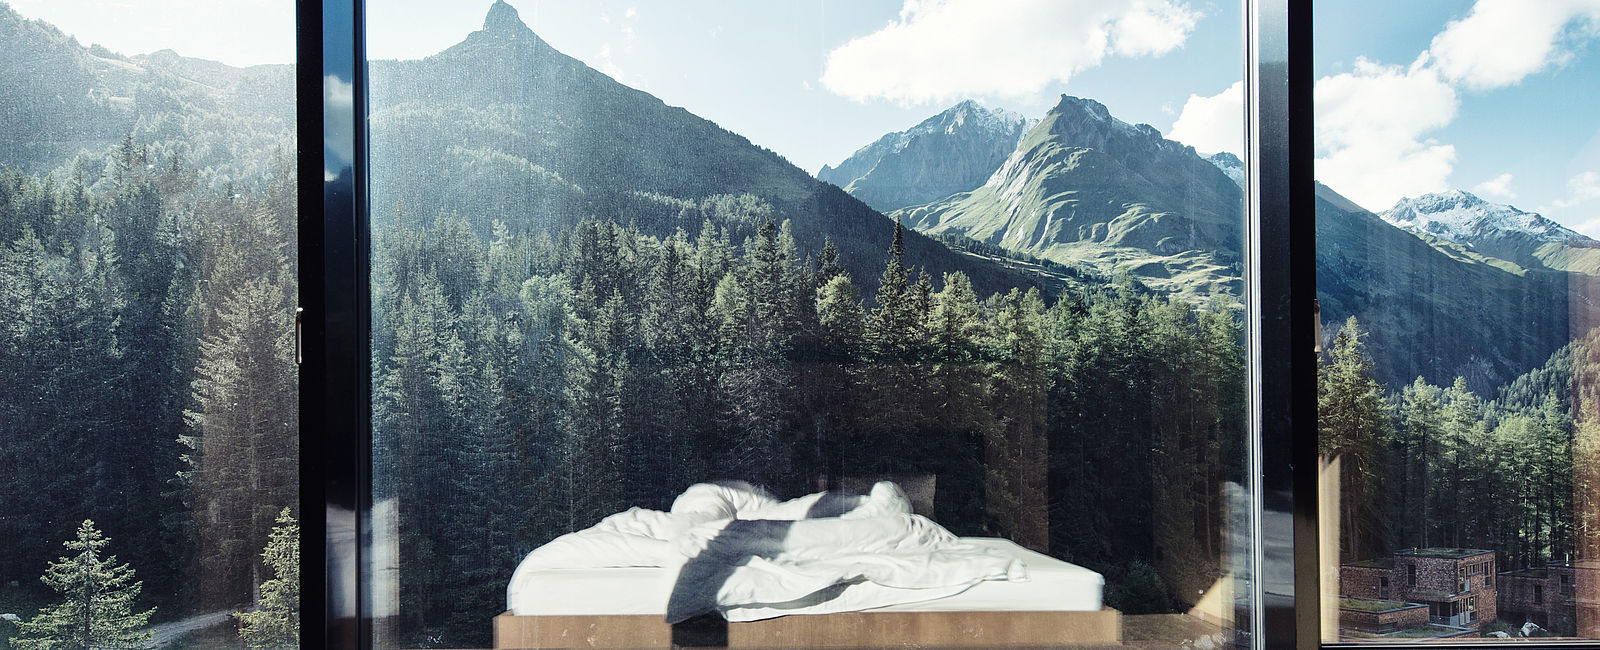 HOTEL NEWS
 Gradonna****s Mountain Resort: Schlaf-gut© Sommelière garantieren guten Schlaf 
